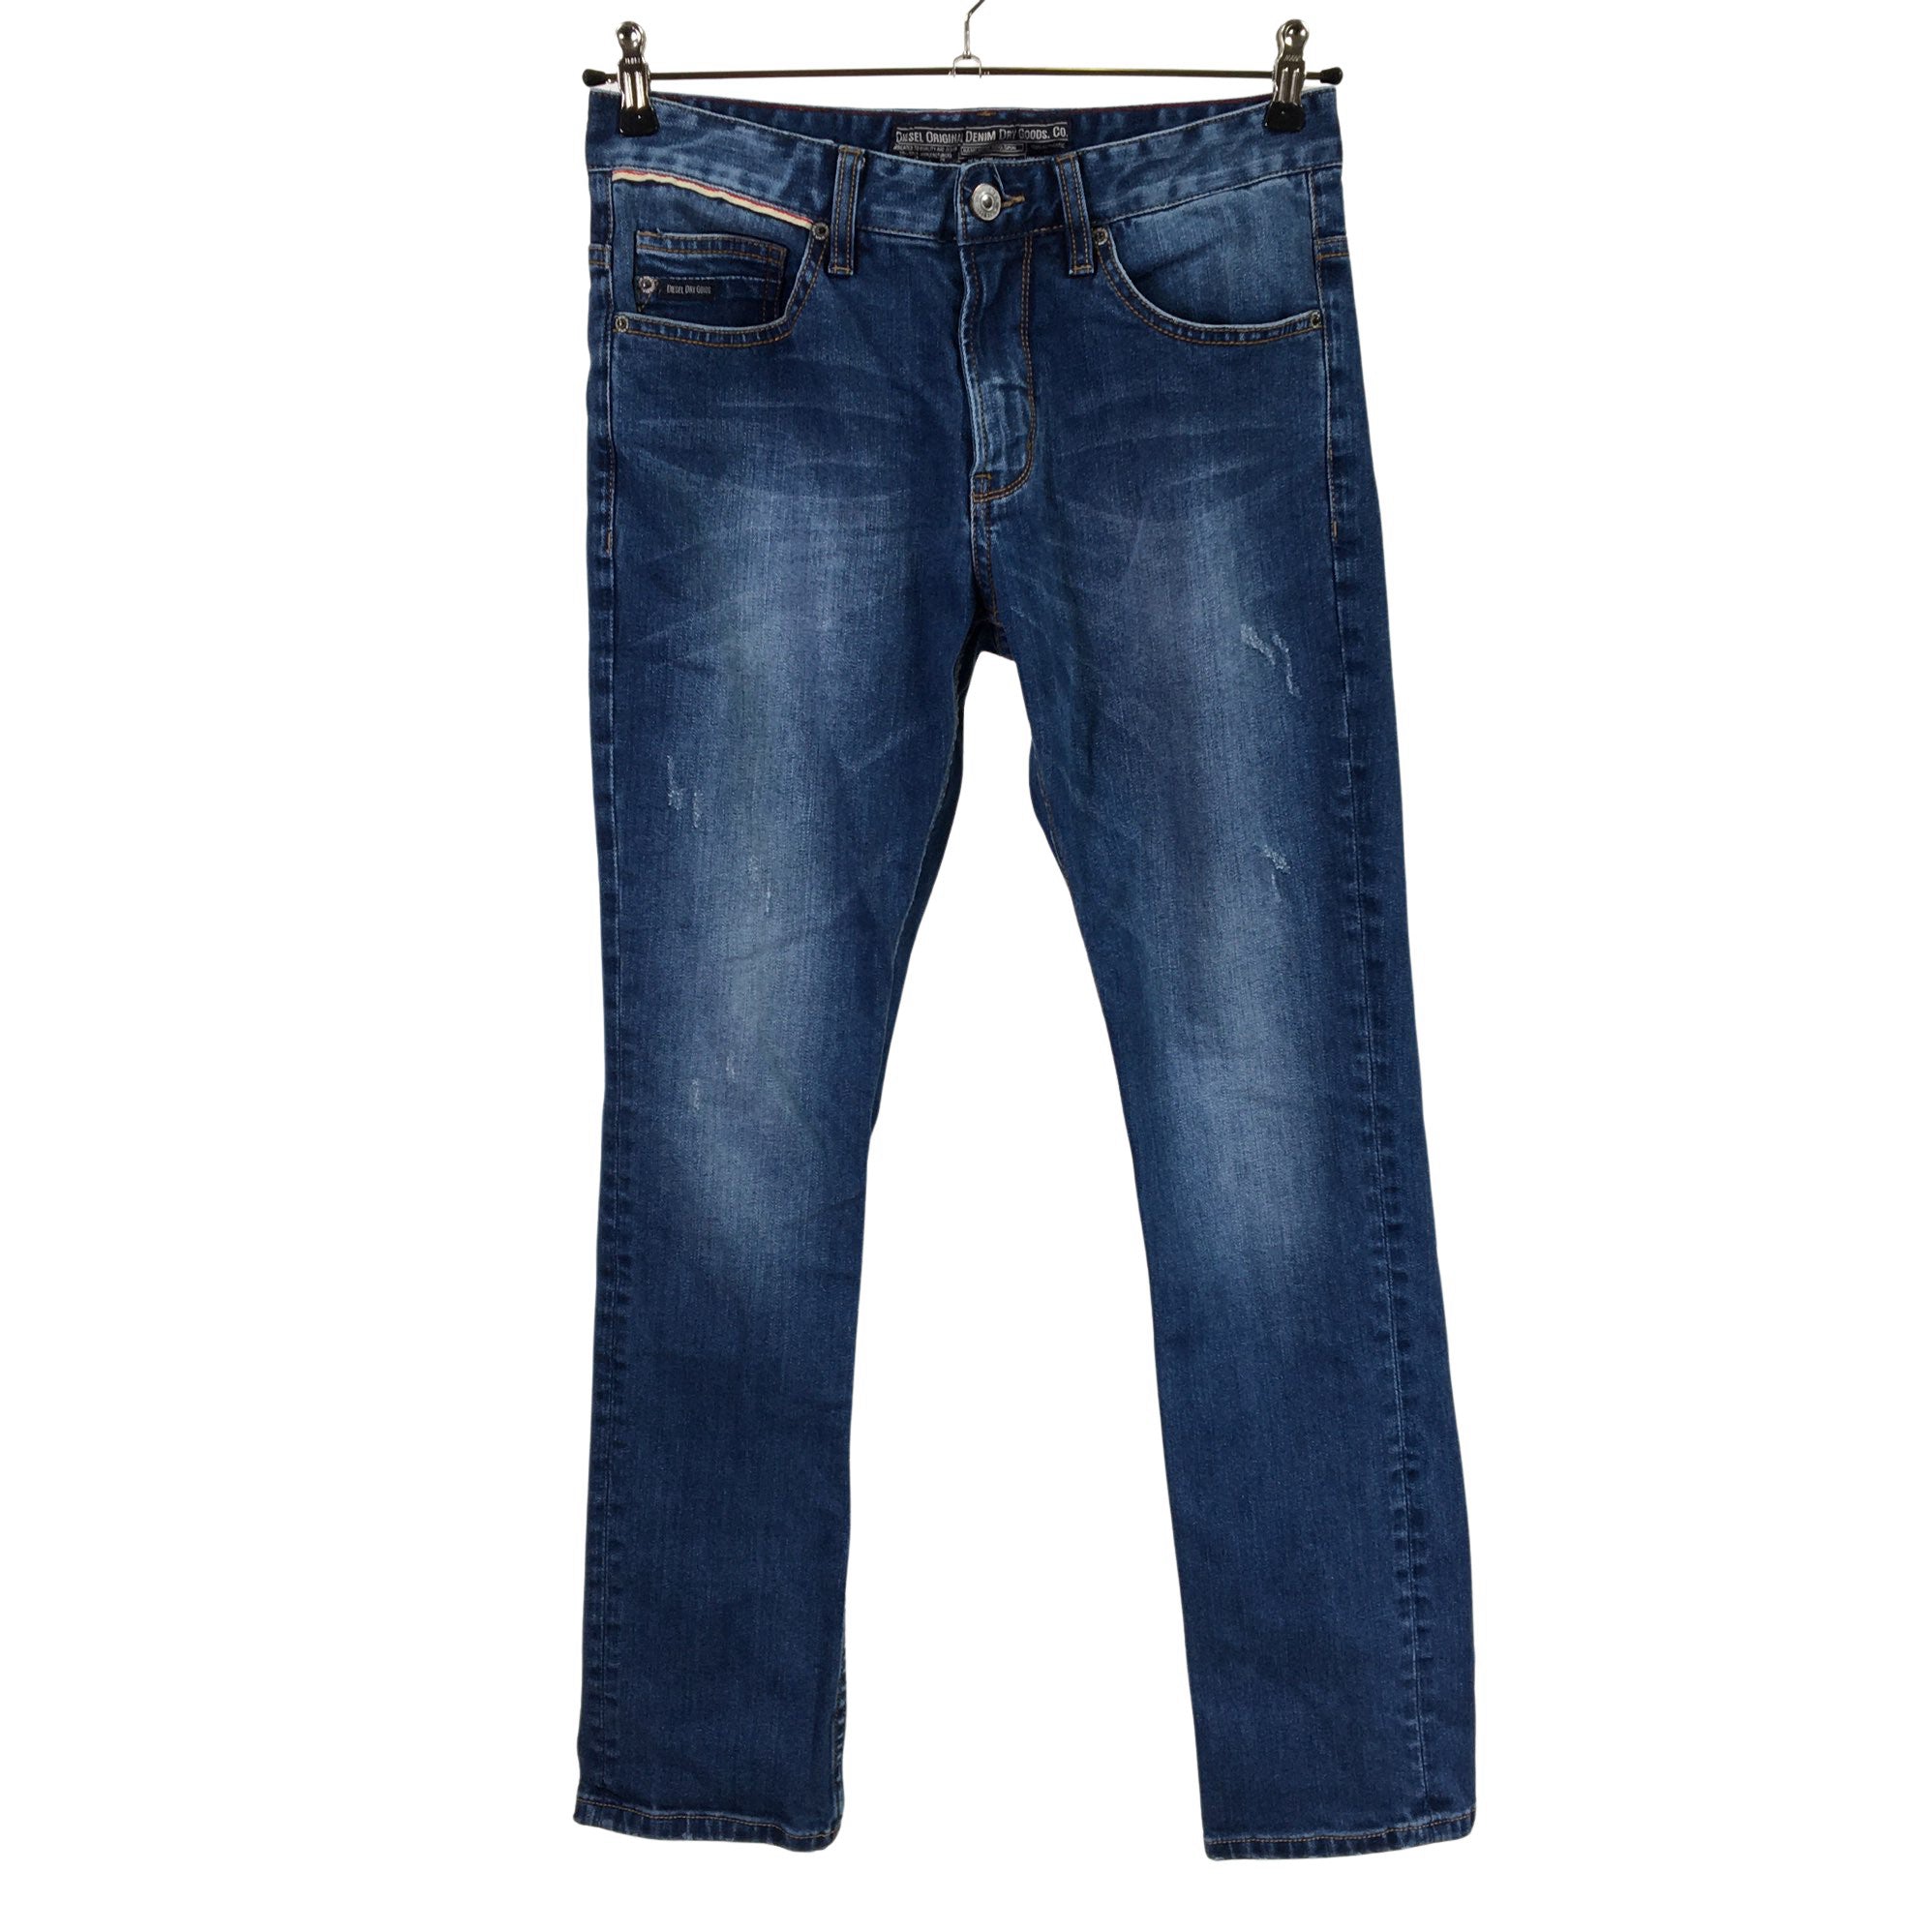 graan Roos kroeg Women's Diesel Jeans, size 40 (Beige) | Emmy